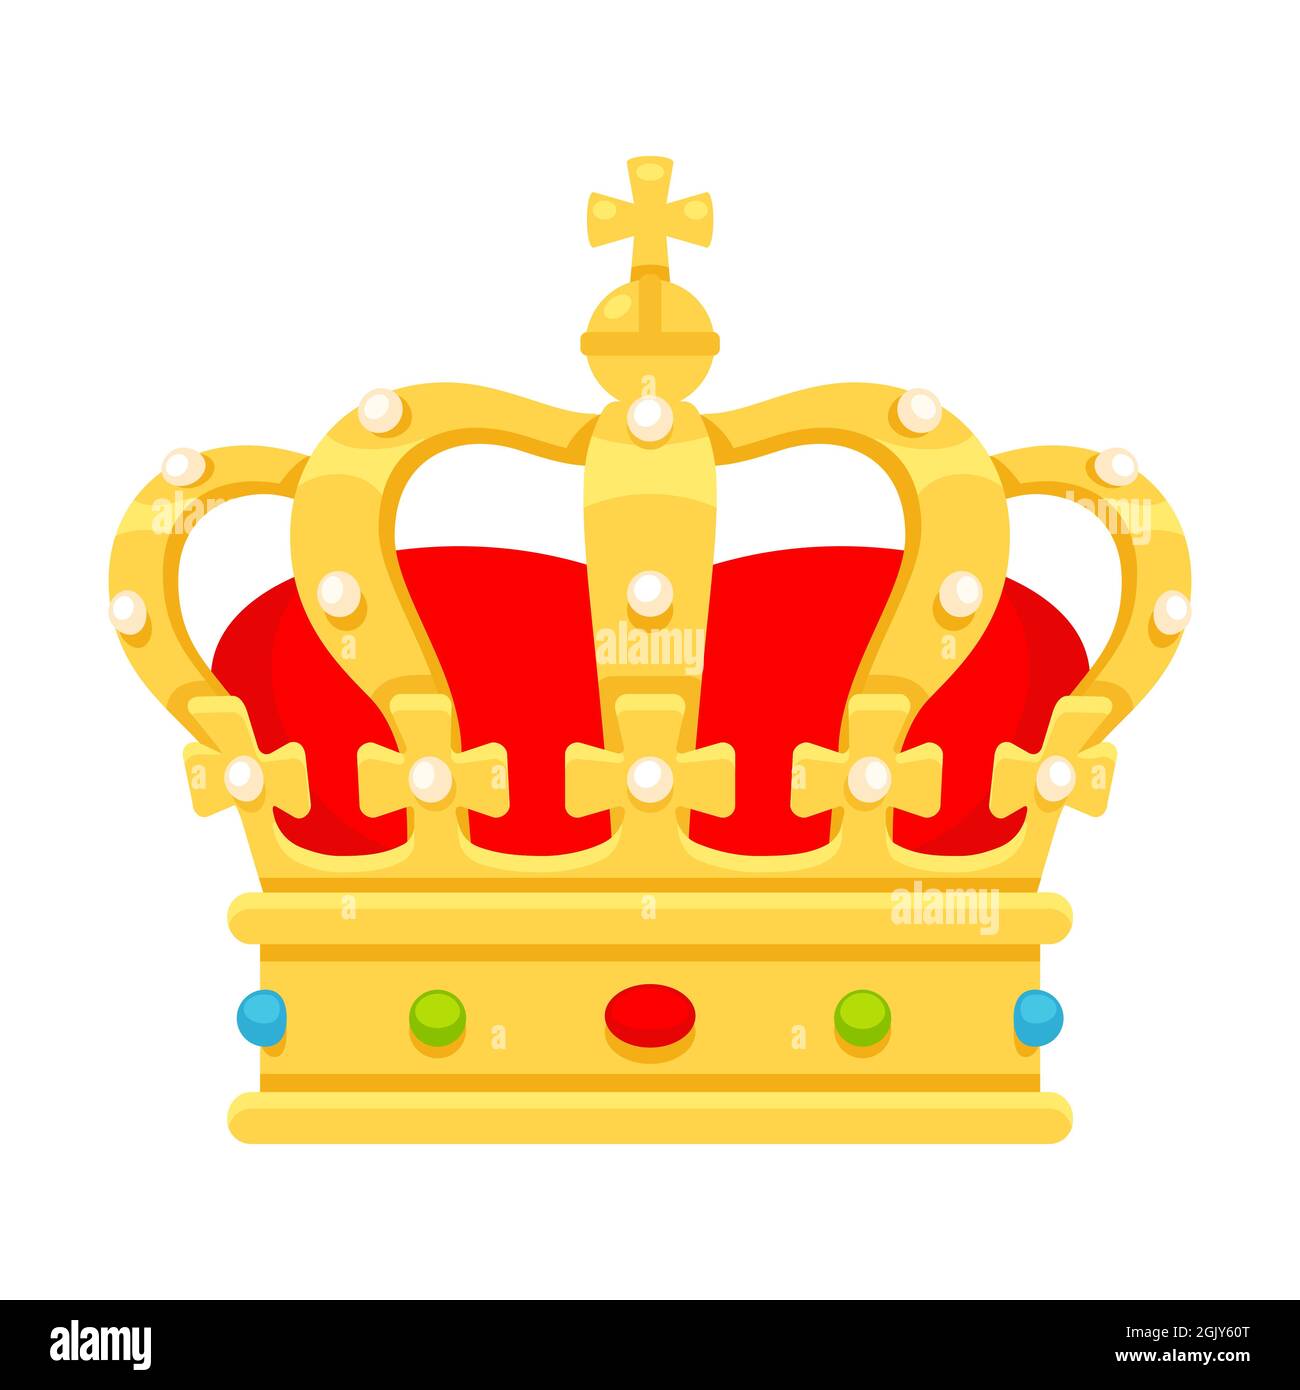 Corona real holandesa Icono, Corona de los Países Bajos. Ilustración de dibujo vectorial de dibujos animados planos. Ilustración del Vector